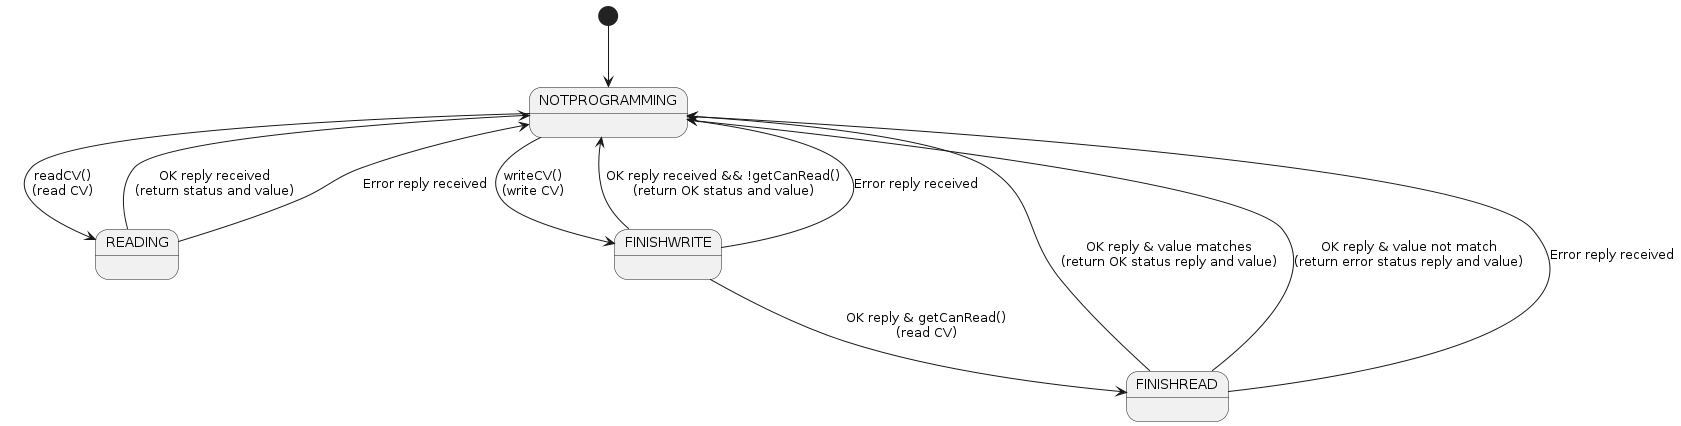 UML State diagram